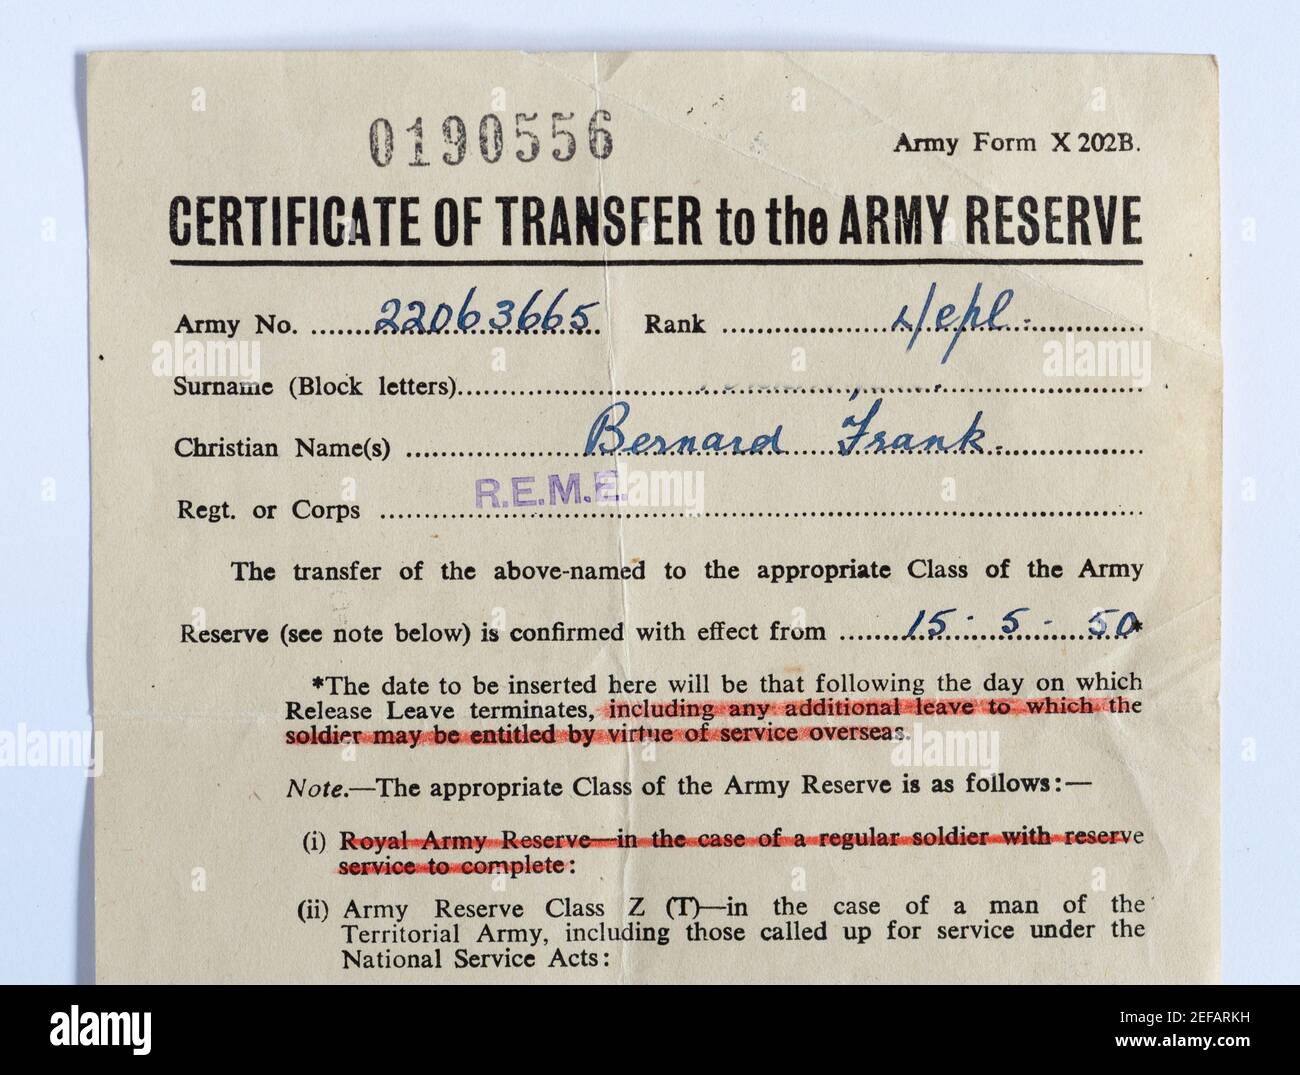 Certificat de transfert à la réserve de l'armée après la fin du service national en 1950, documents militaires historiques, Angleterre, Royaume-Uni Banque D'Images